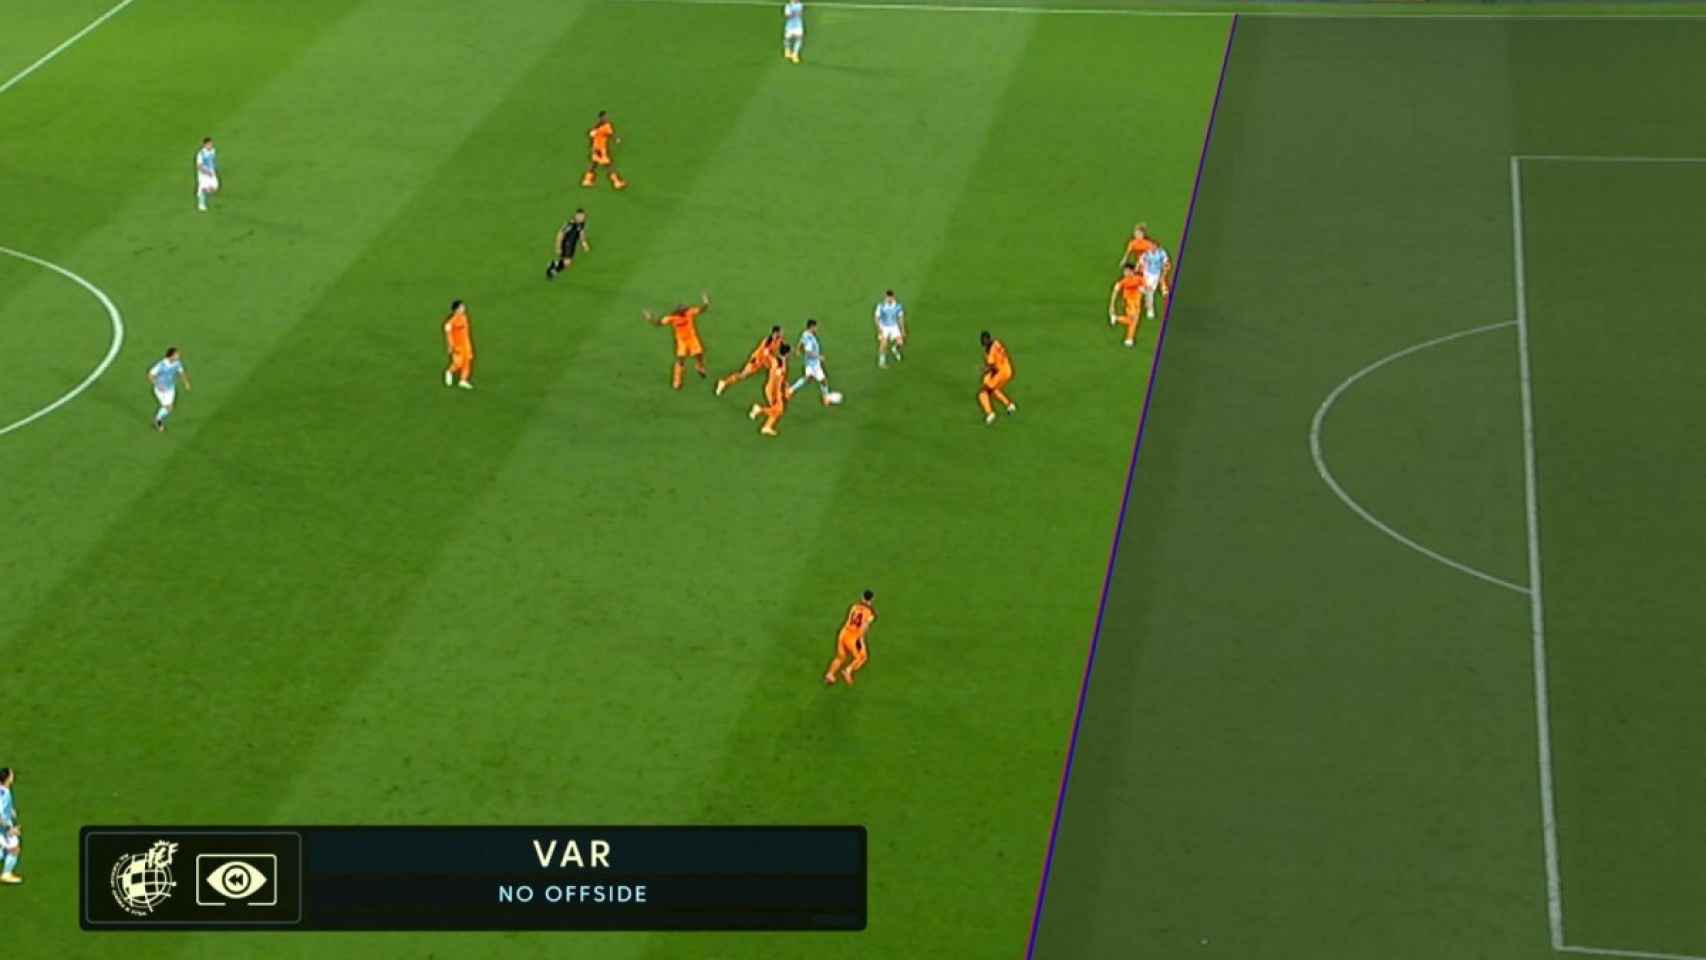 Imagen del VAR del partido Celta de Vigo - Valencia de la jornada 2 de La Liga